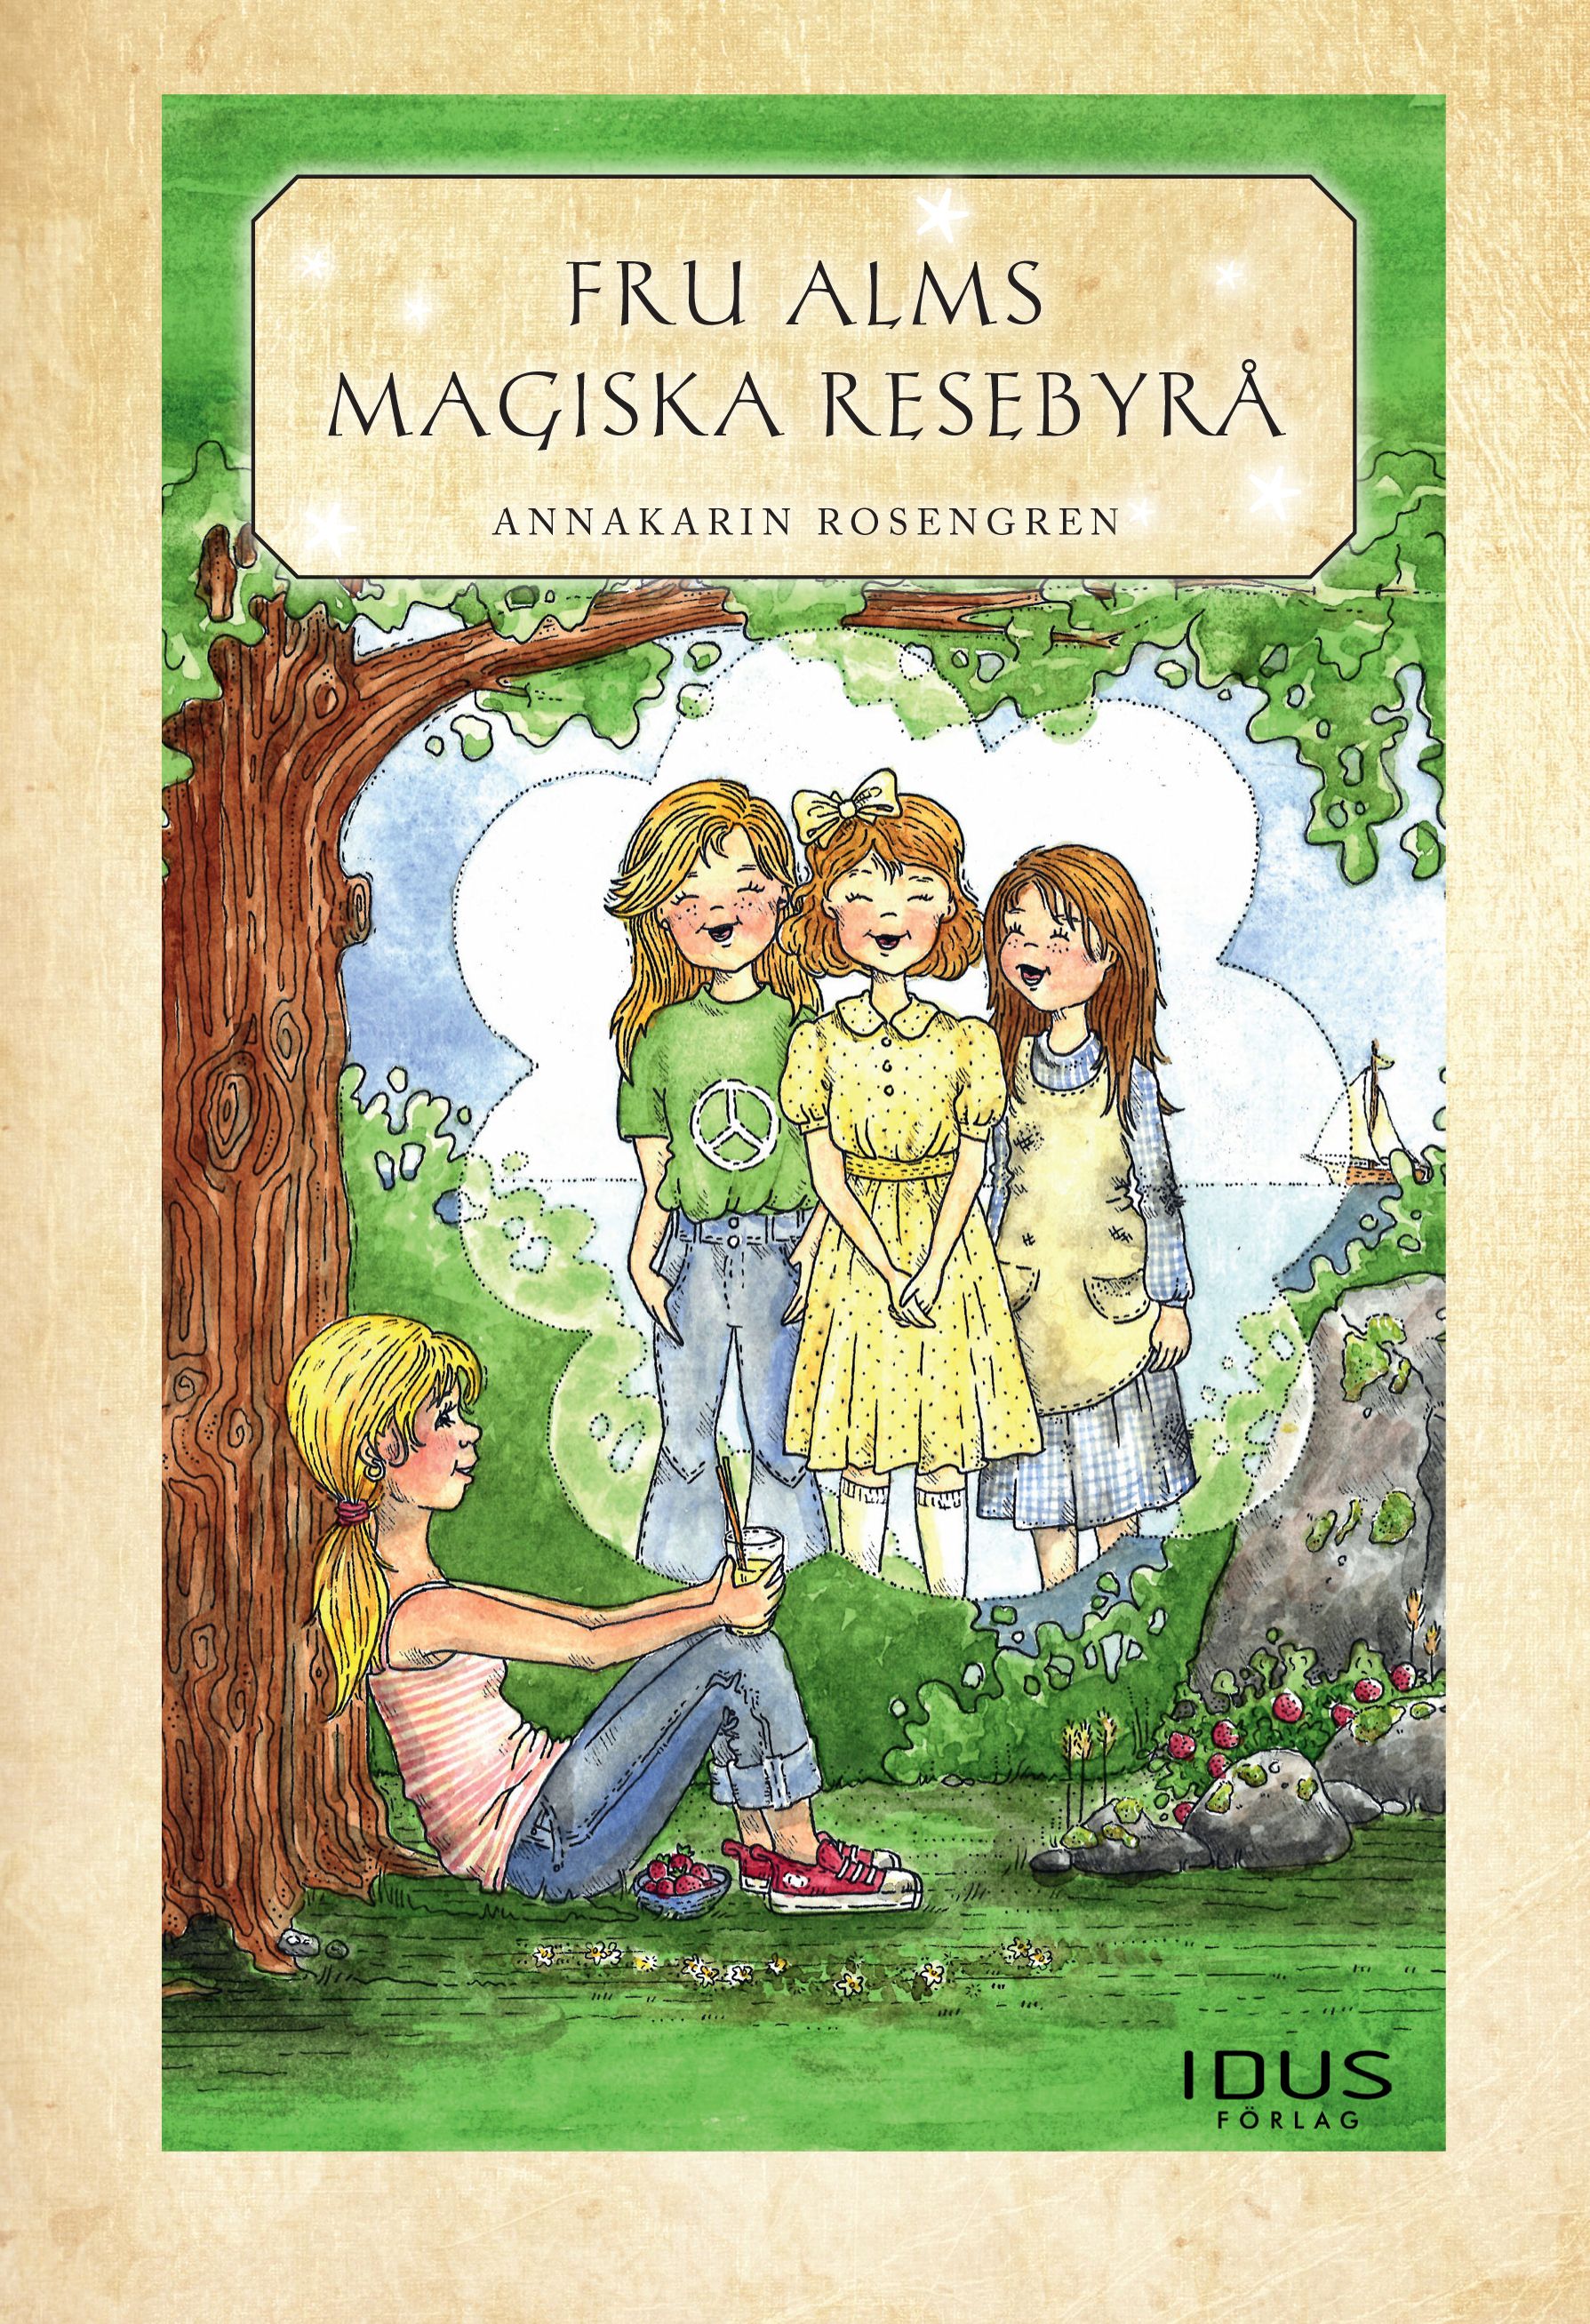 Fru Alms magiska resebyrå, eBook by Annakarin Rosengren